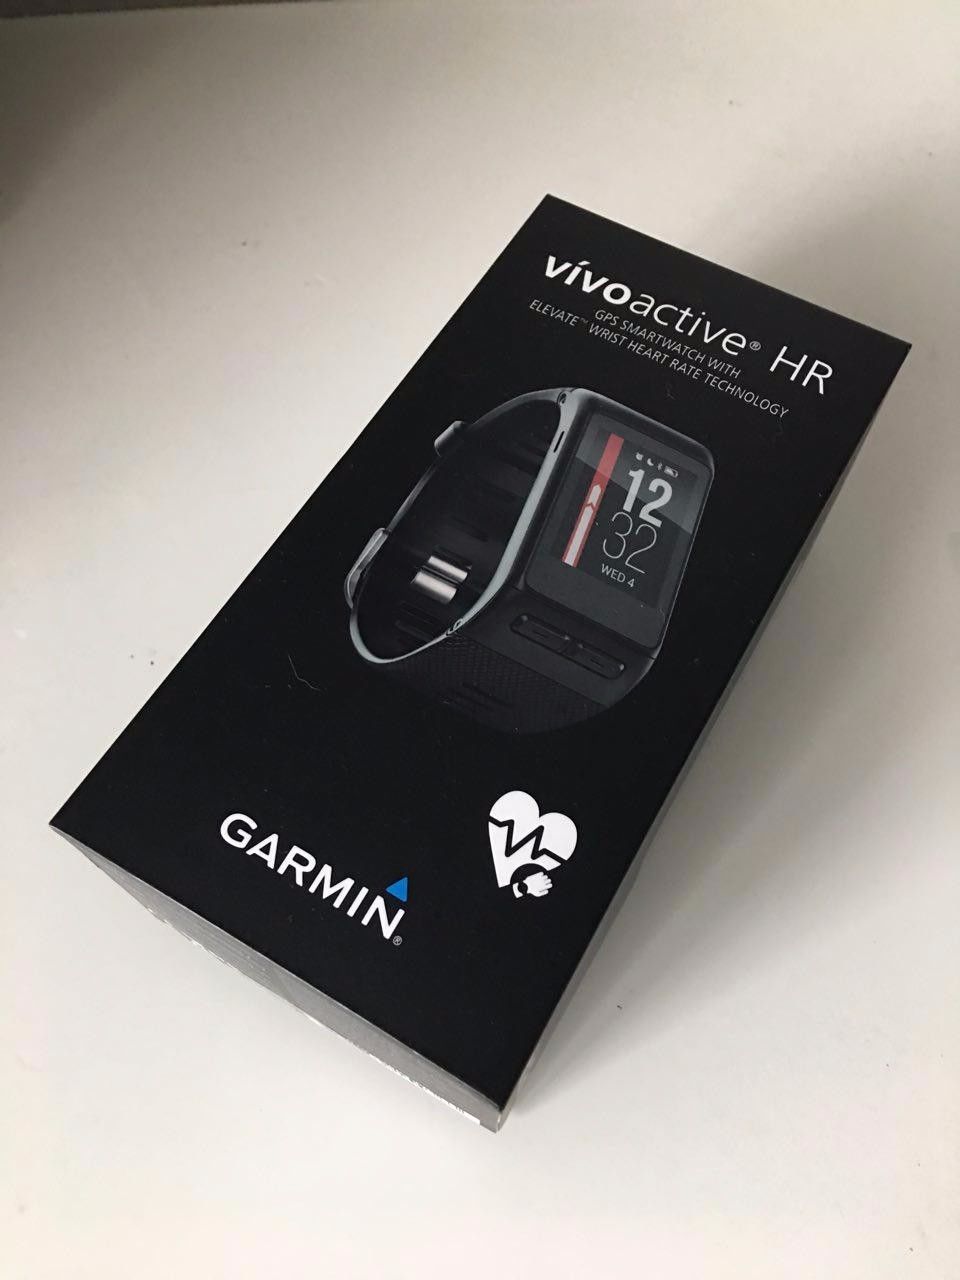 NEU & OVP Garmin Vivoactive HR Fitness Tracker Smartwatch GPS Sport Uhr schwarz